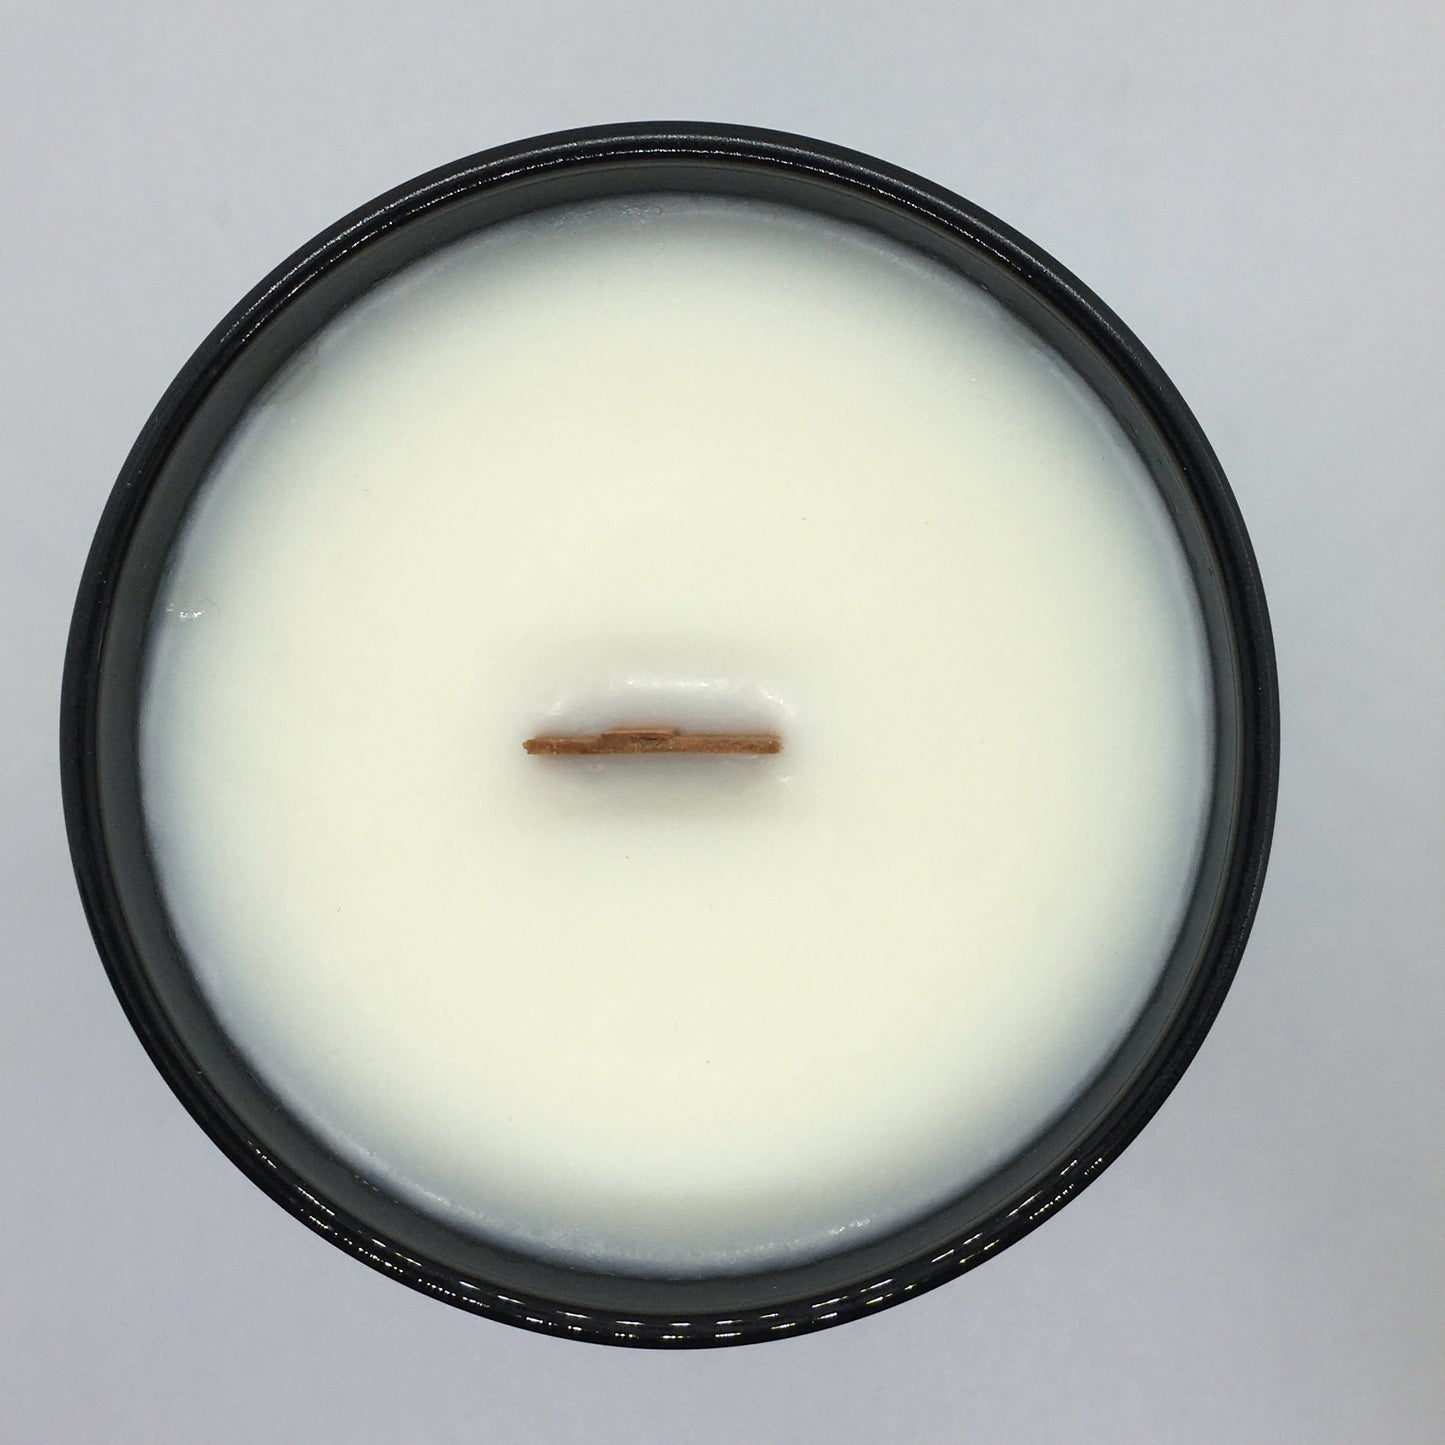 Geranium, Lavender & Ylang Ylang Aromatherapy Candle